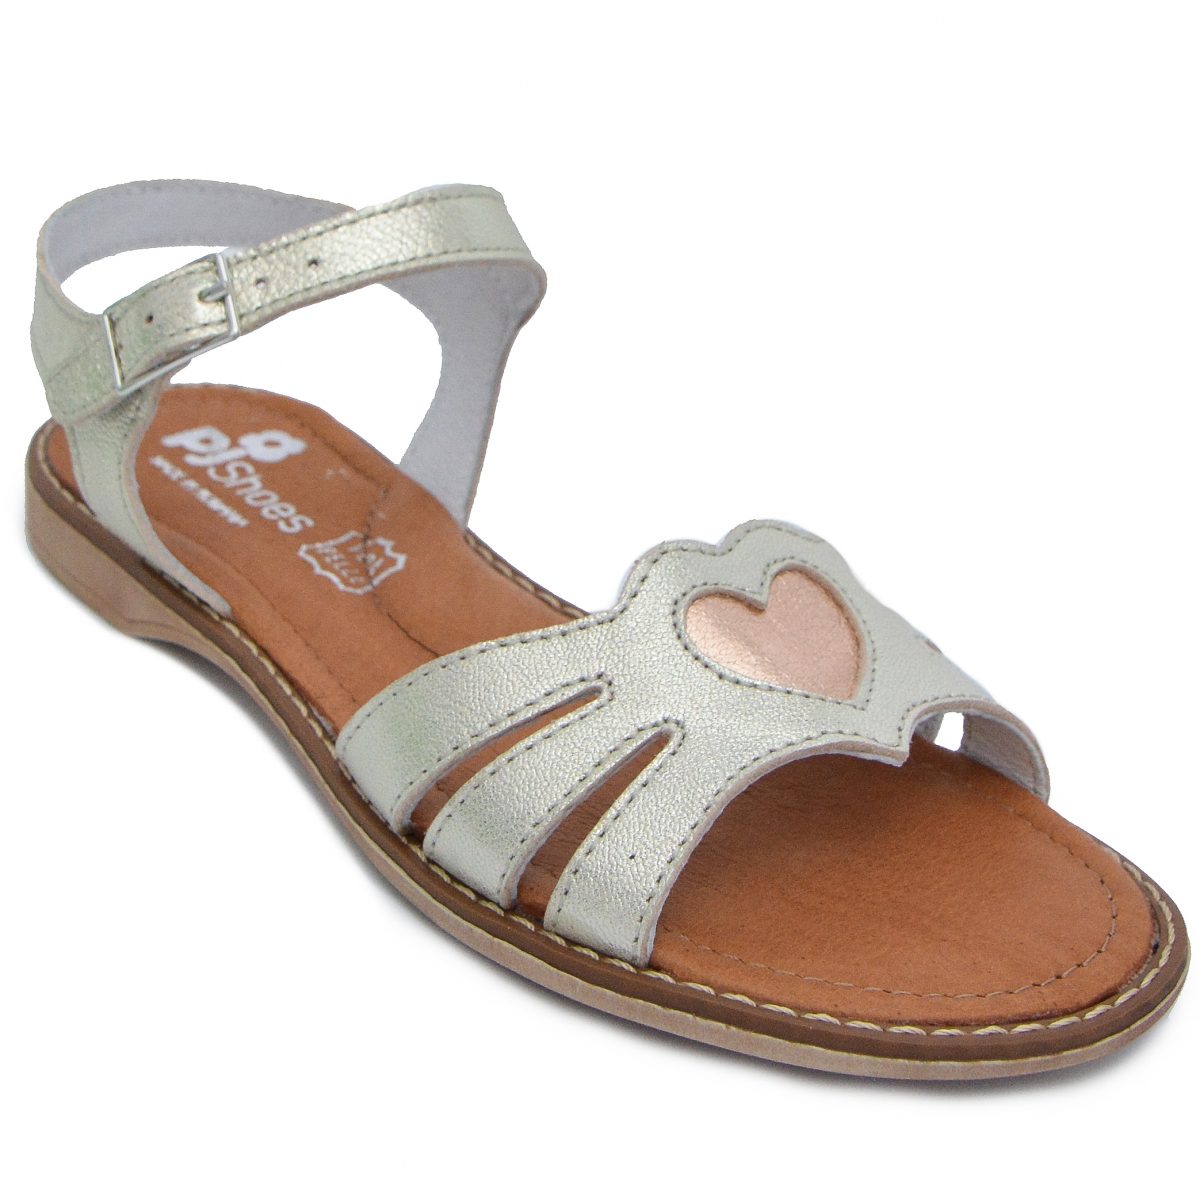 Sandale din piele pentru fete Core argintiu PJ Shoes, marimi 27-30